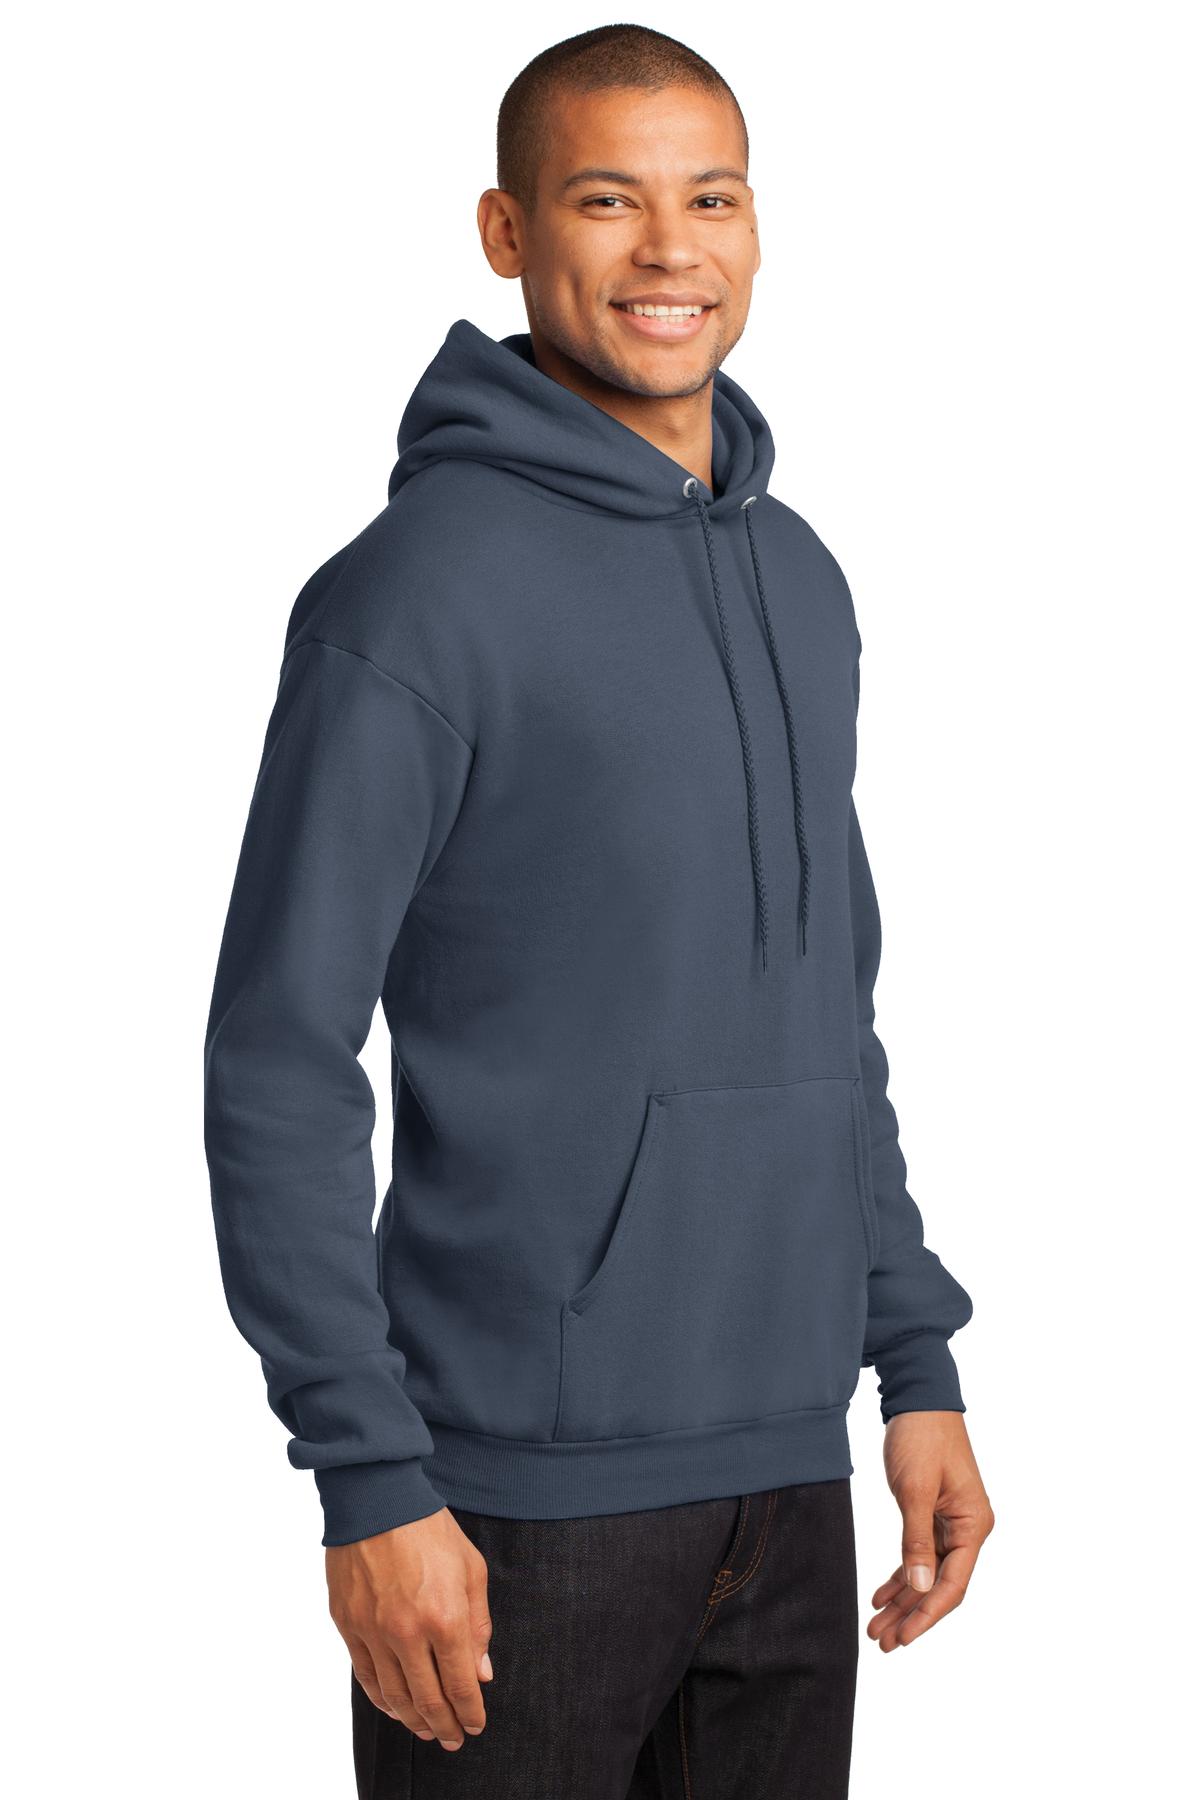 Port & Company - Core Fleece Pullover Hooded Sweatshirt. PC78H - Steel Blue